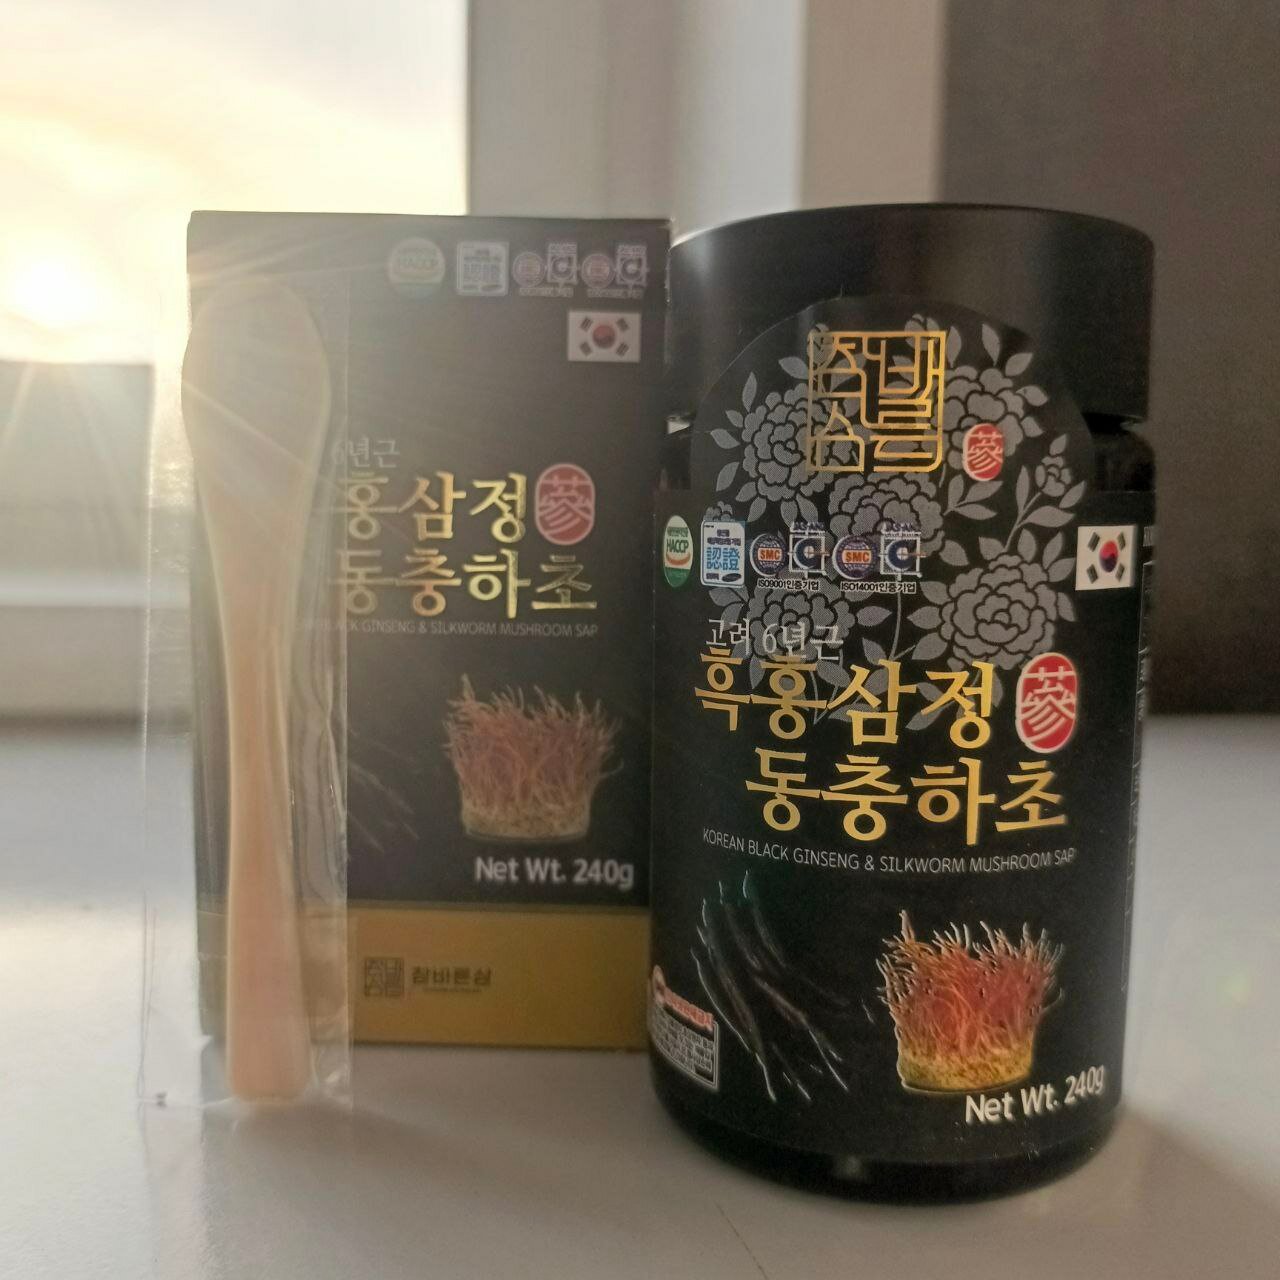 Сок корейского черного женьшеня и грибов тутового шелкопряда Korean Black Ginseng & Silkworm Mushroom Sap 240g